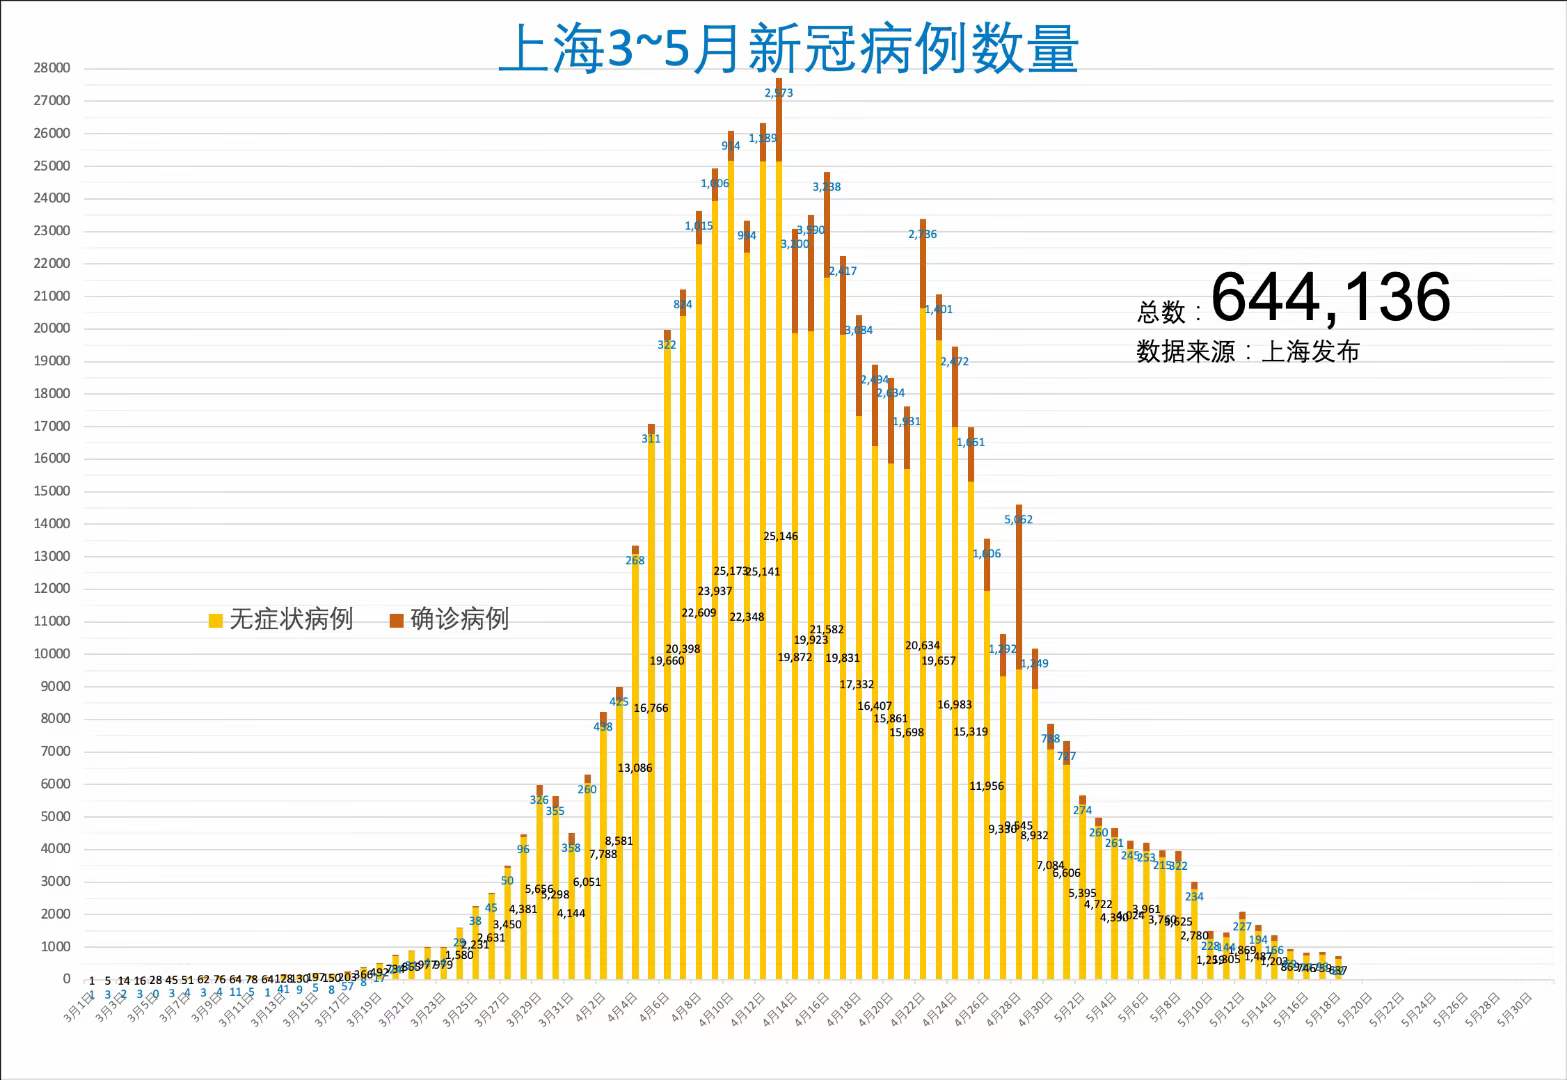 上海昨日新增本土<font color="red">新</font><font color="red">冠</font>肺炎<font color="red">确诊</font>病例82+637例，死亡1例，在每天700-900例之间震荡（2022.5.19）